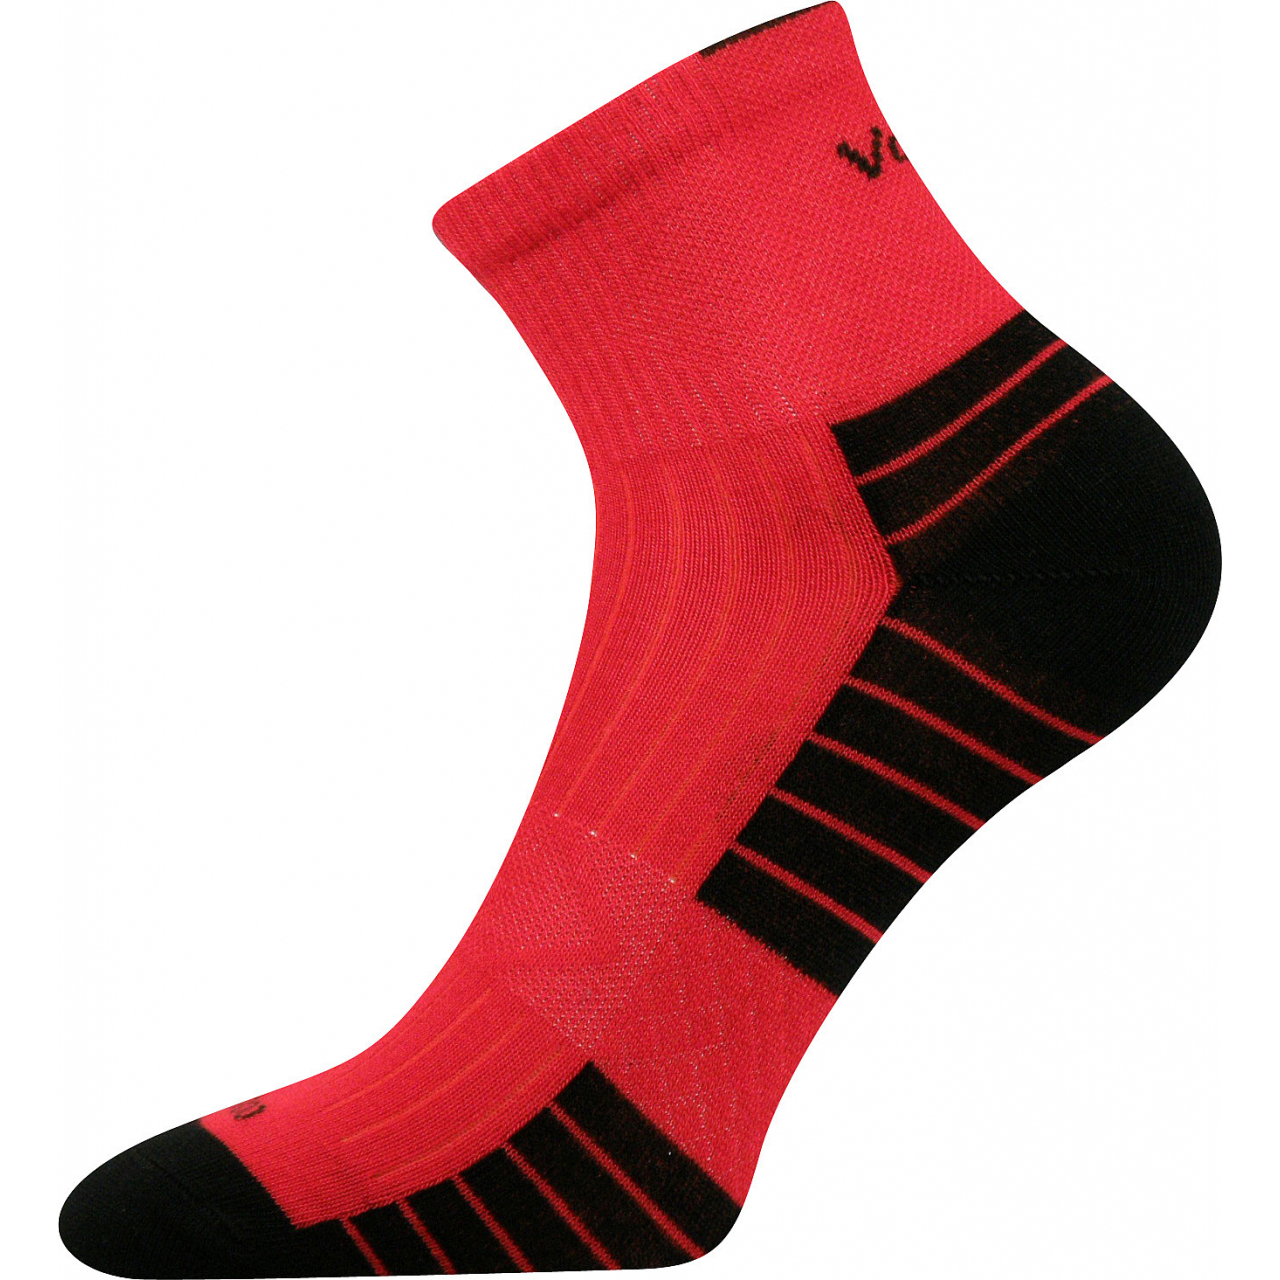 Ponožky unisex sportovní Voxx Belkin - červené-černé, 43-46